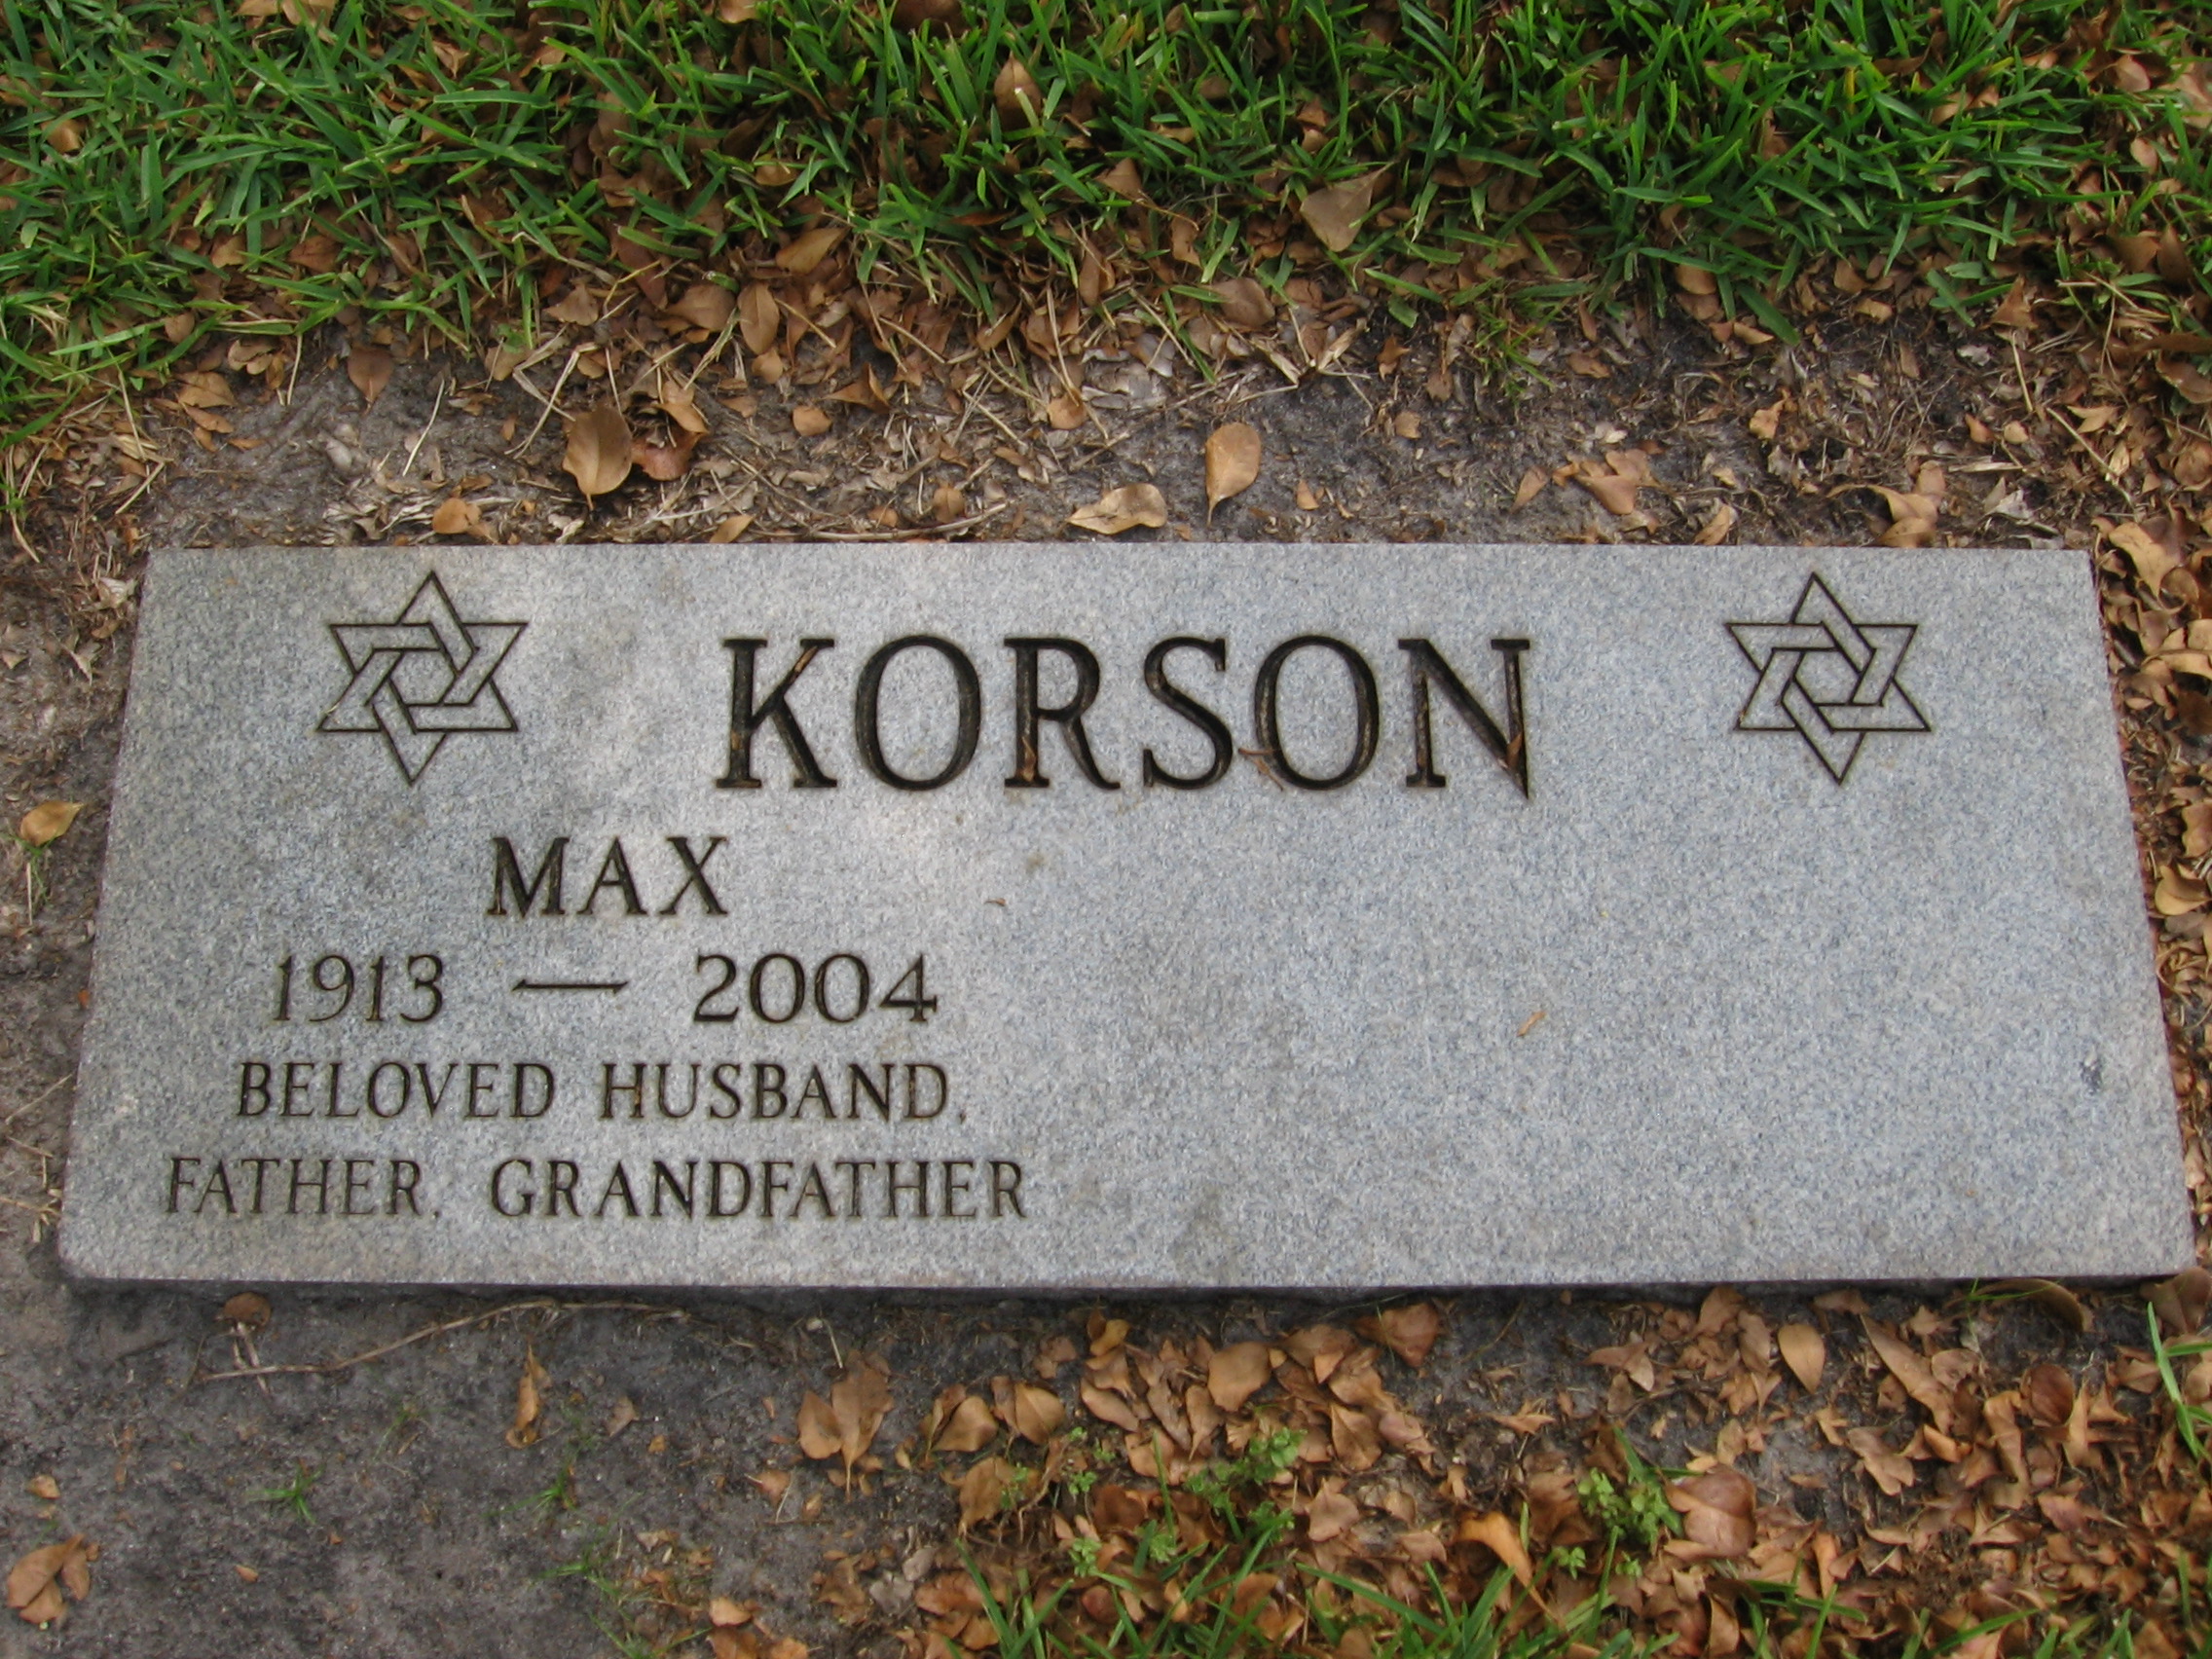 Max Korson